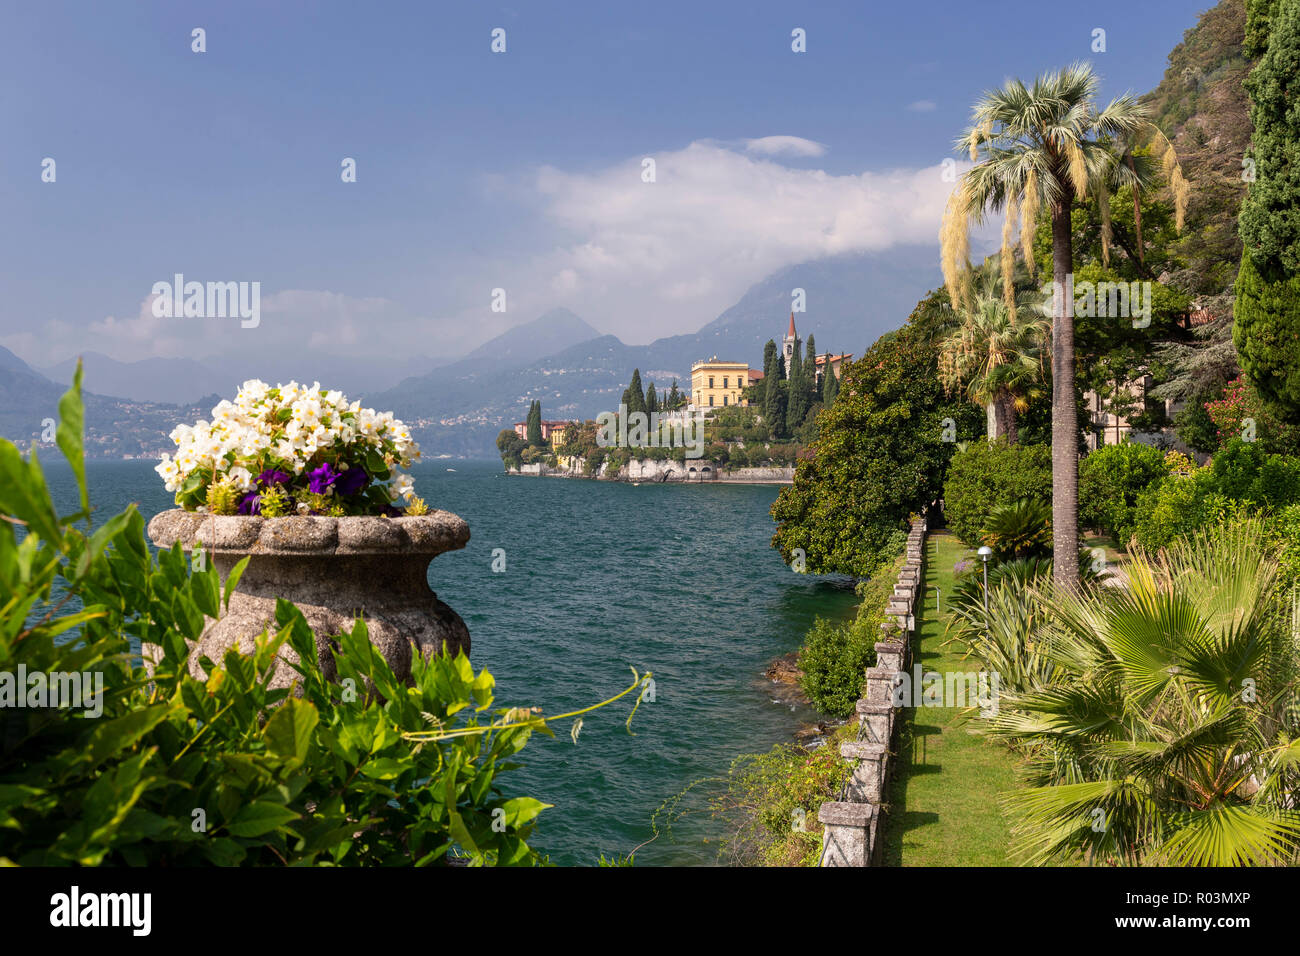 Les bâtiments et les jardins de Villa Monastero à Varenna sur le lac de Côme, Italie Banque D'Images